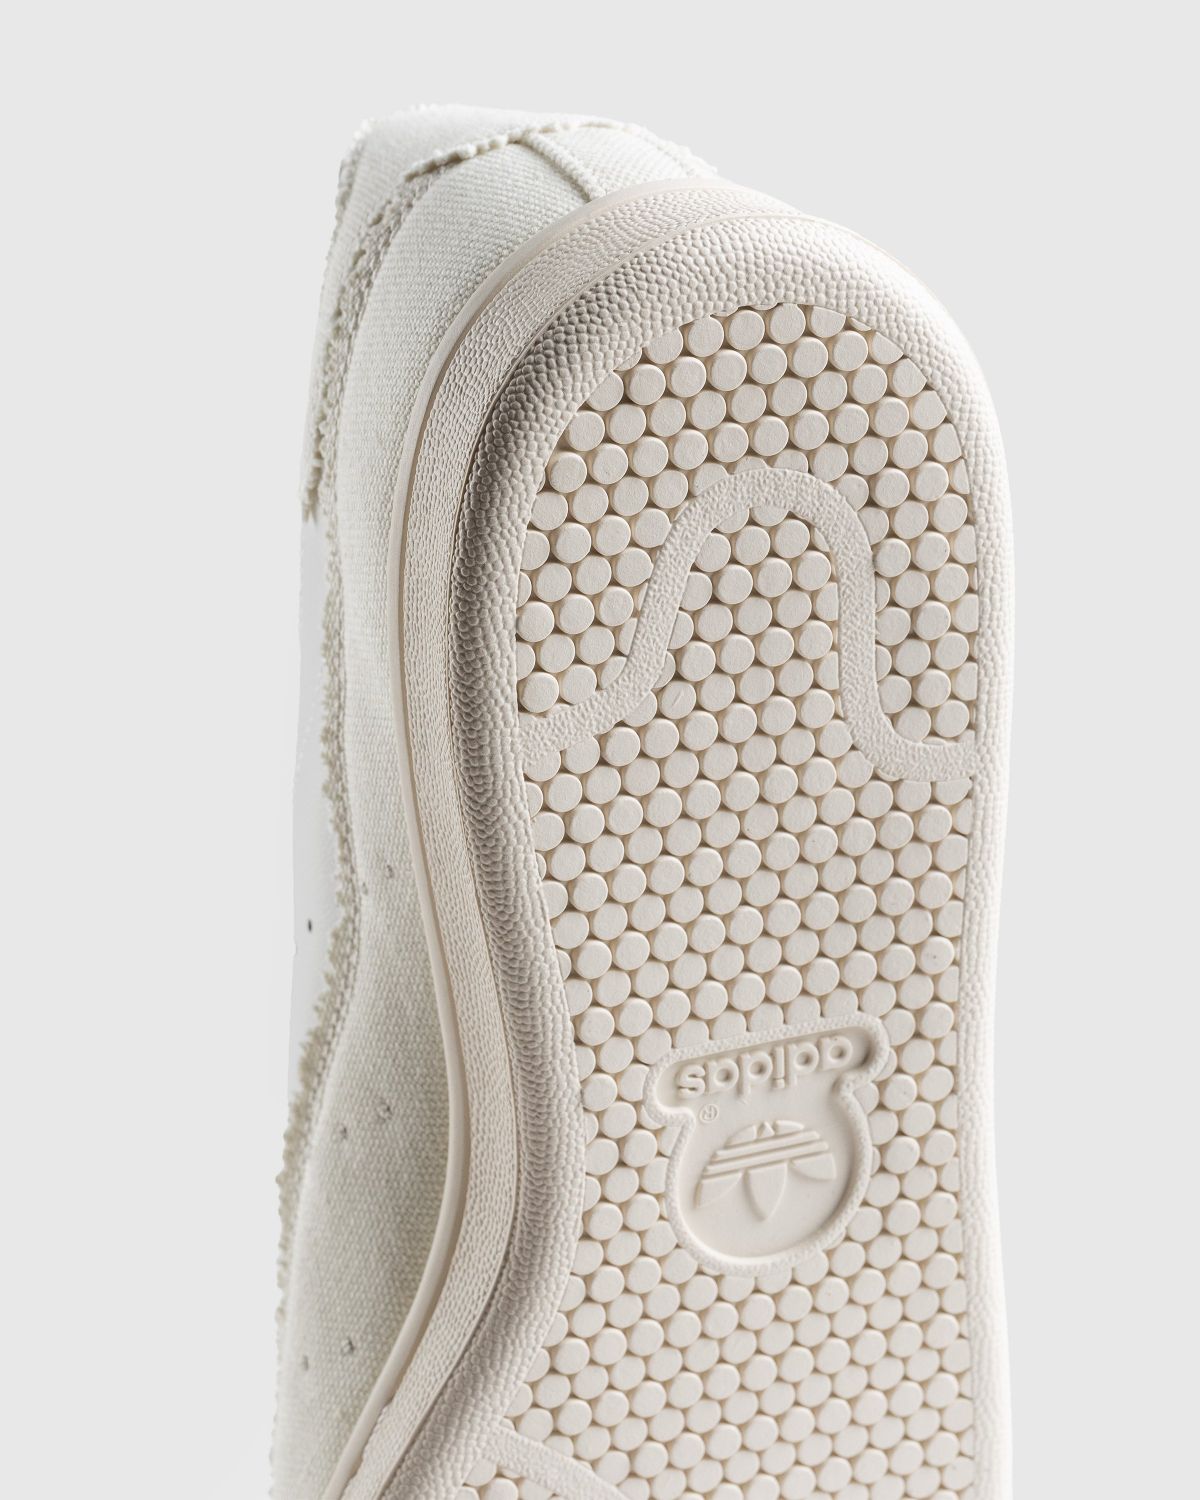 Adidas – Stan Smith Recon White - Sneakers - White - Image 6